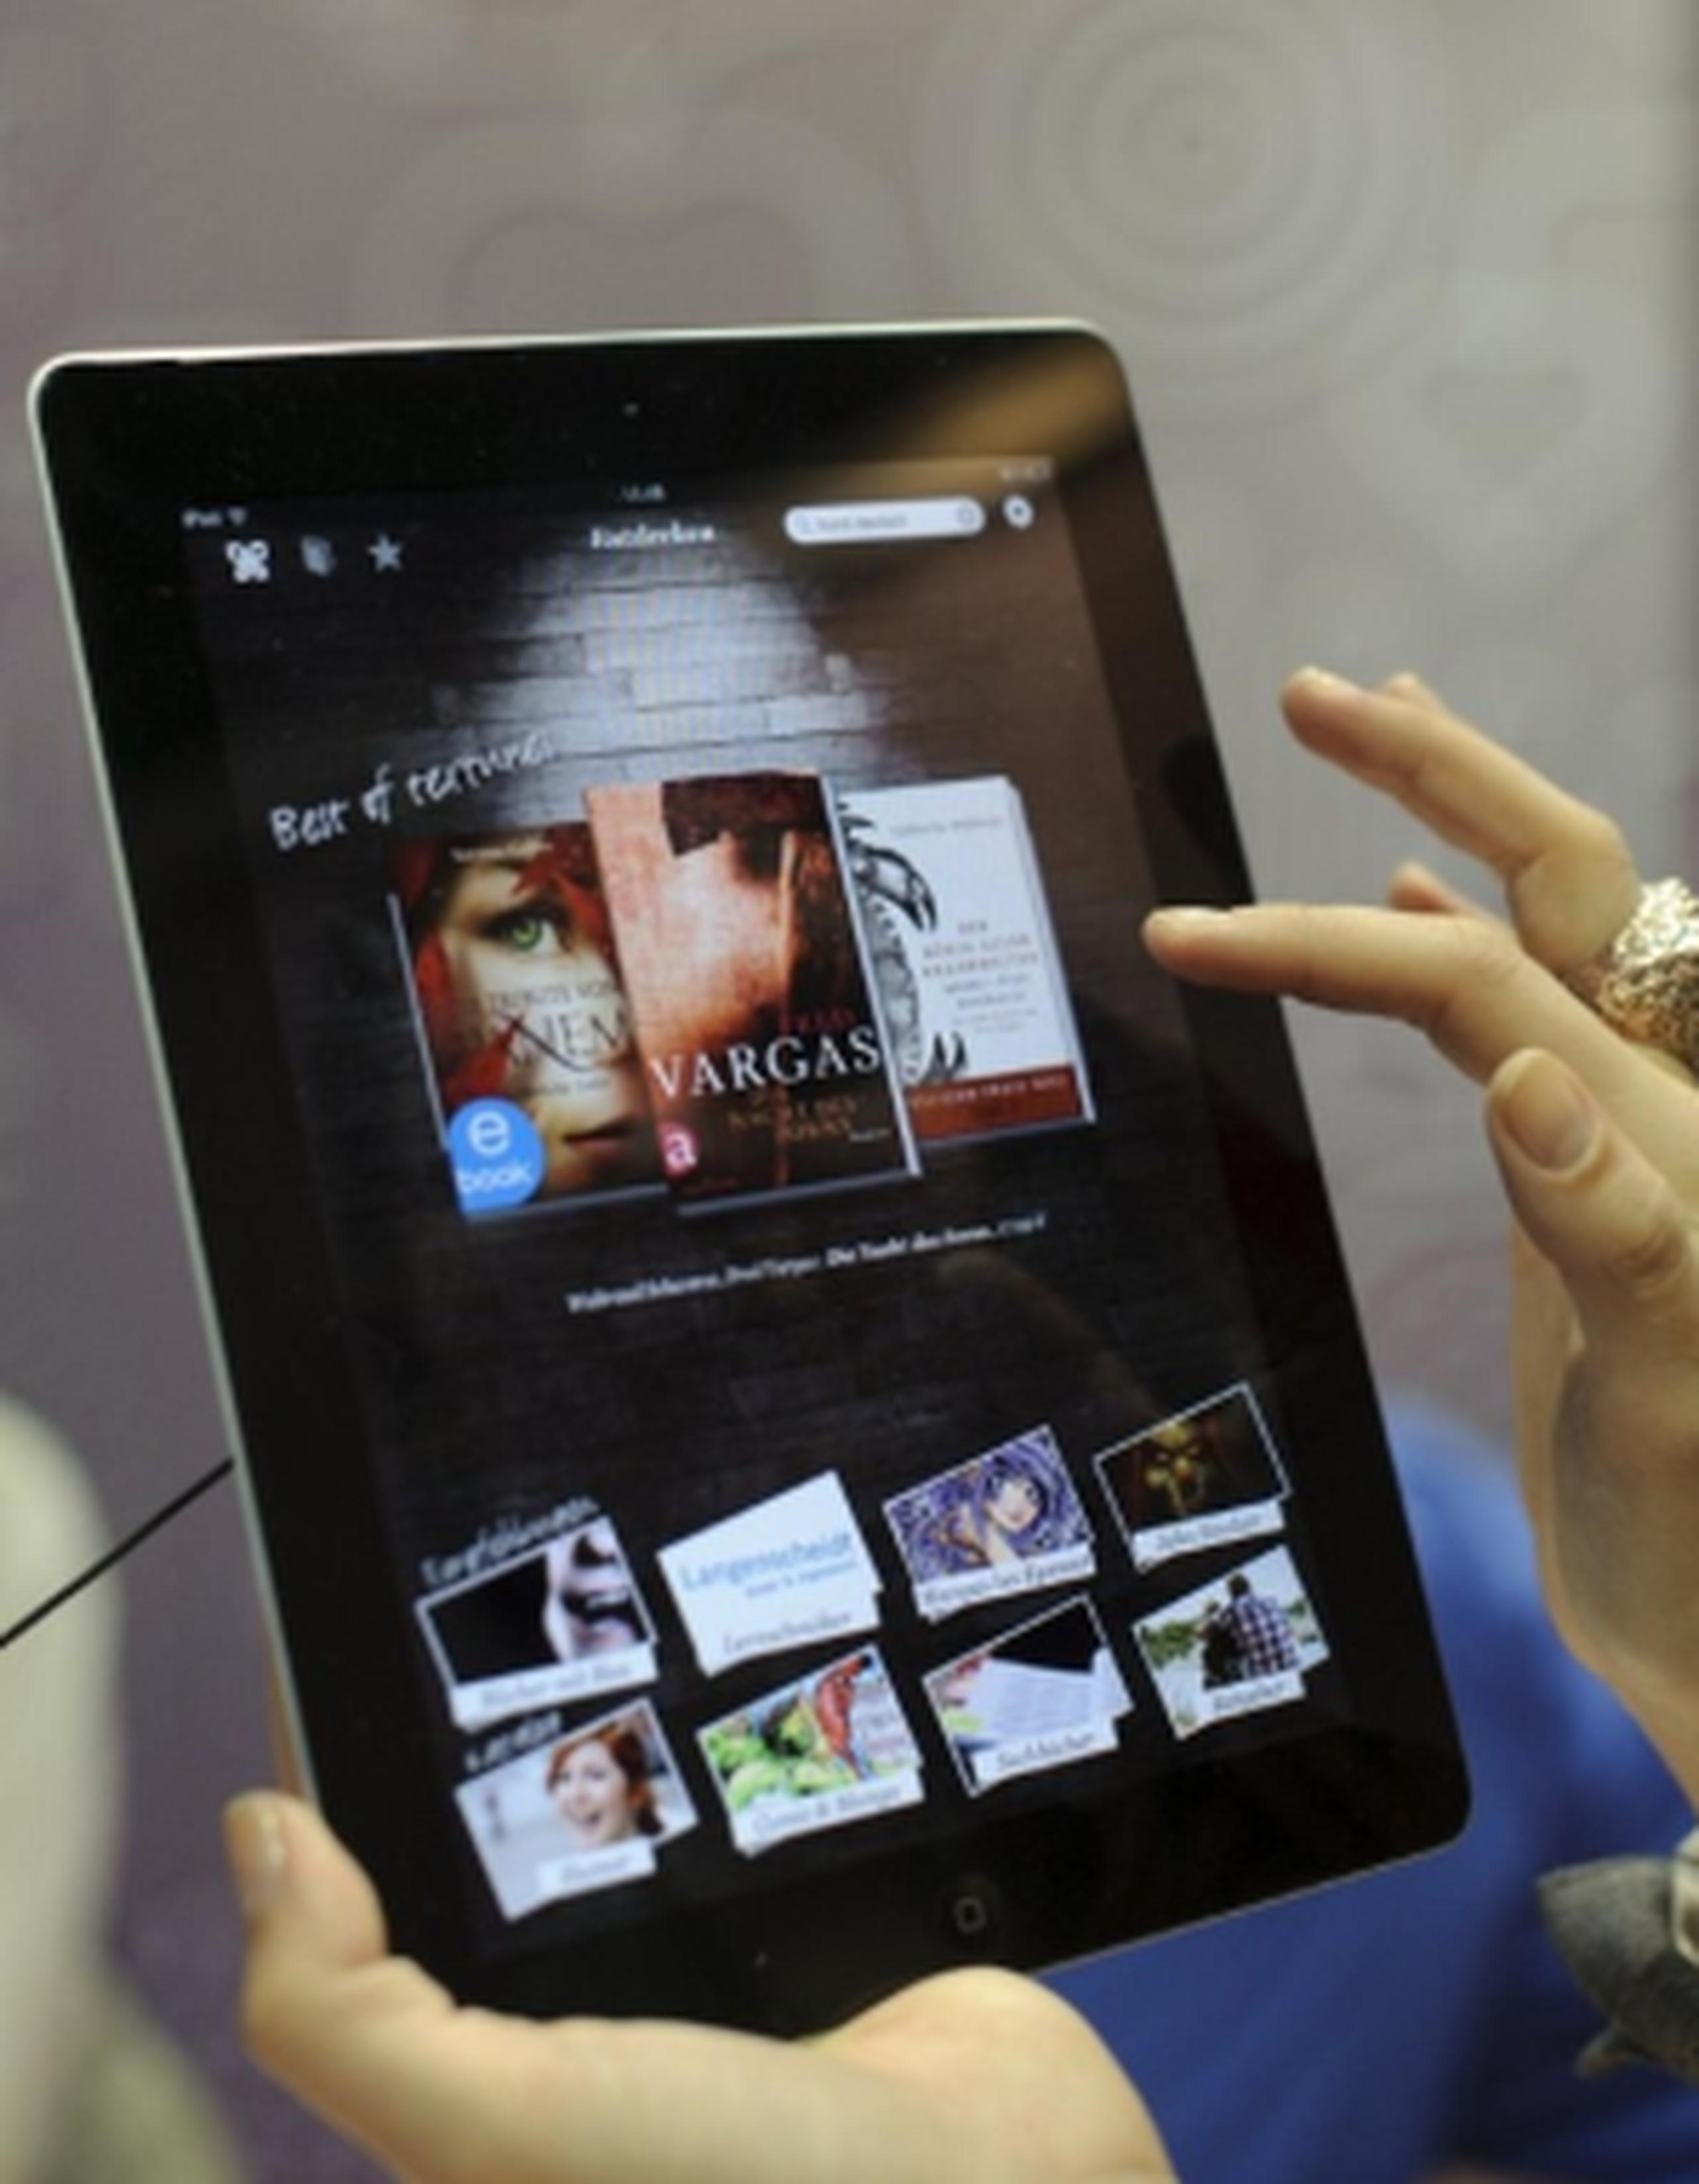 El iPad hizo su debut en el mercado en abril 3 del 2010 convirtiéndose en uno de los favoritos de los consumidores.(Archivo)